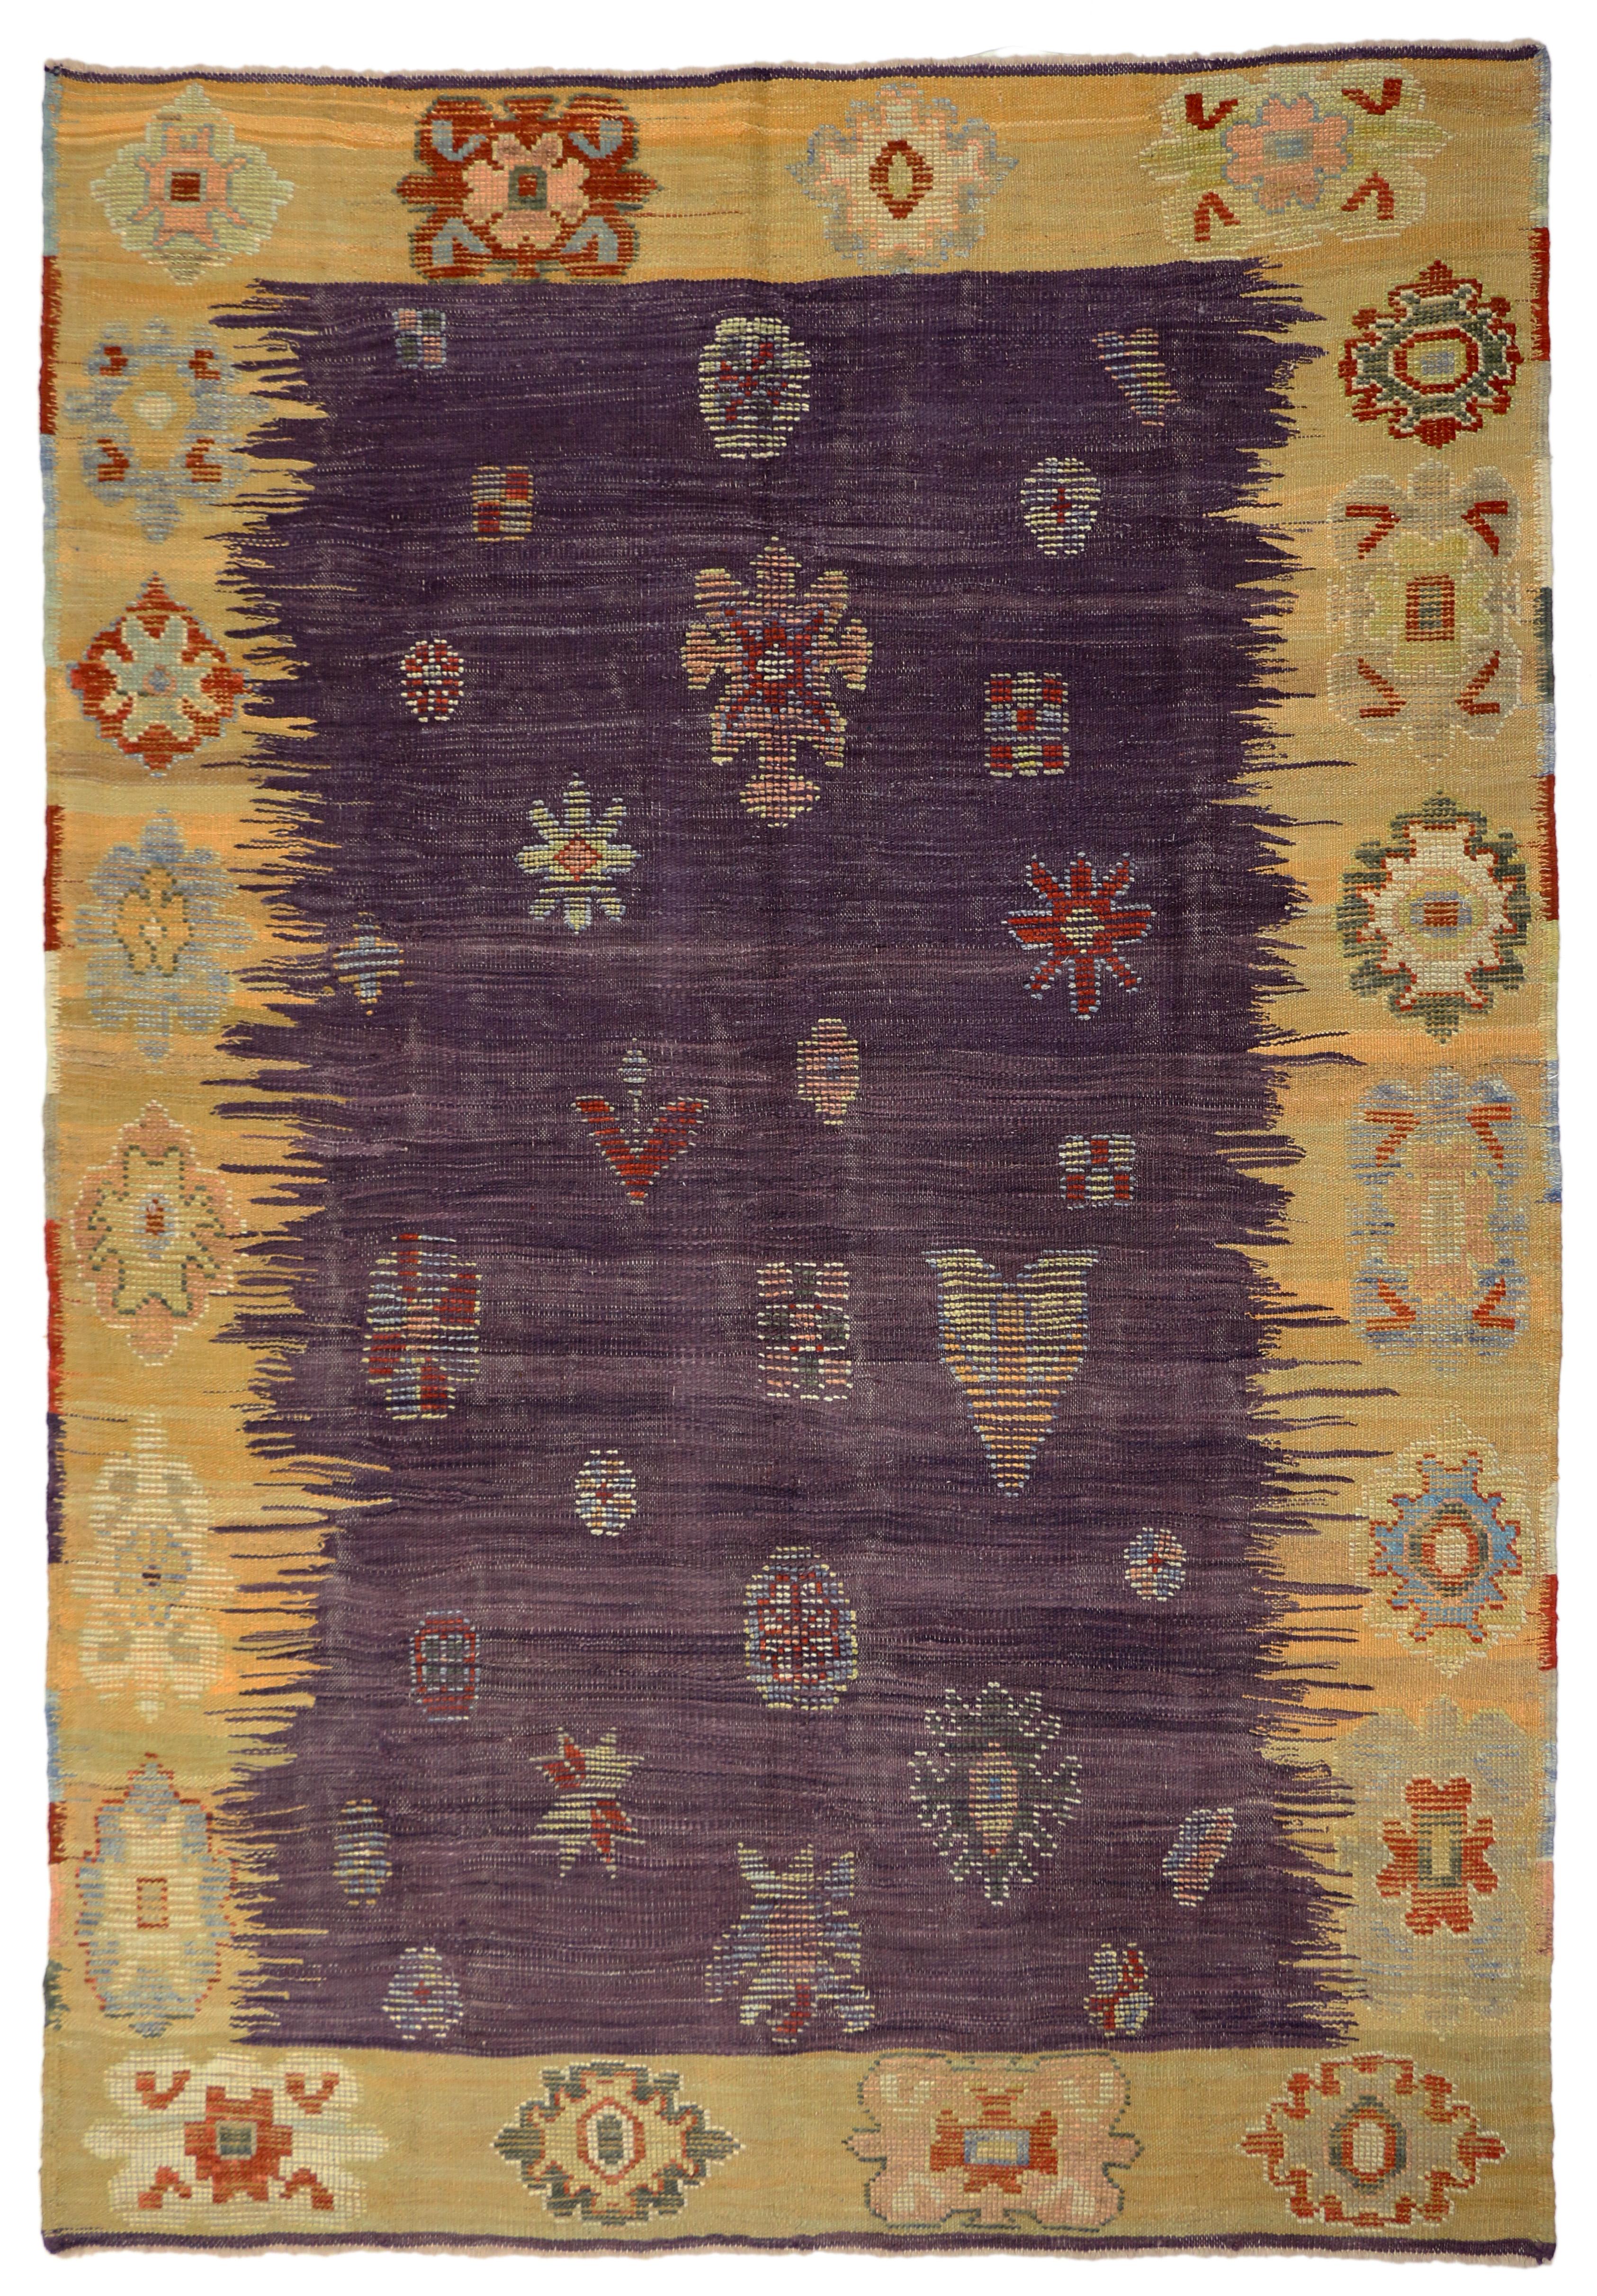 52203 Türkischer Kelim-Teppich mit Stammesmotiv. Lila- und Gelbtöne werden in diesem modernen türkischen Kelimteppich verspielt. Eine Vielzahl von geometrischen Motiven sorgt für Dimension und Farbdynamik und passt perfekt zum Tribal-Stil. Die